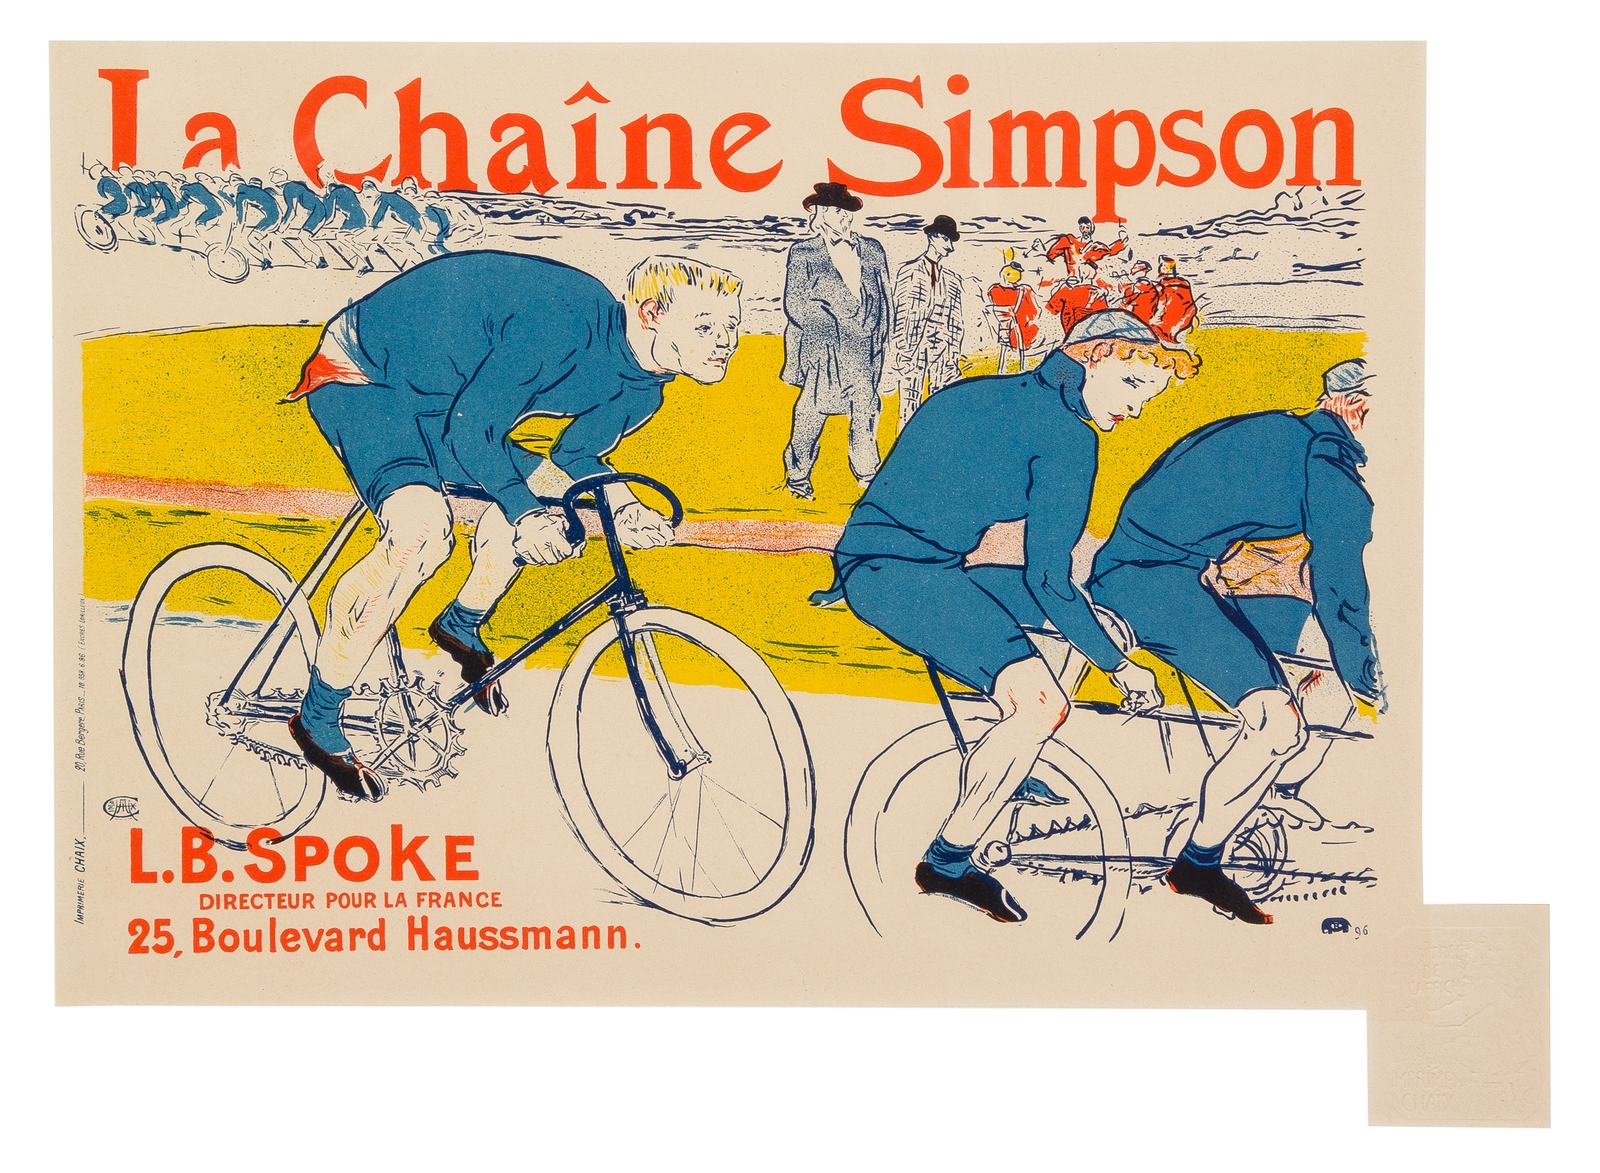 La Chaîne Simpson by Henri de Toulouse-Lautrec, 1896